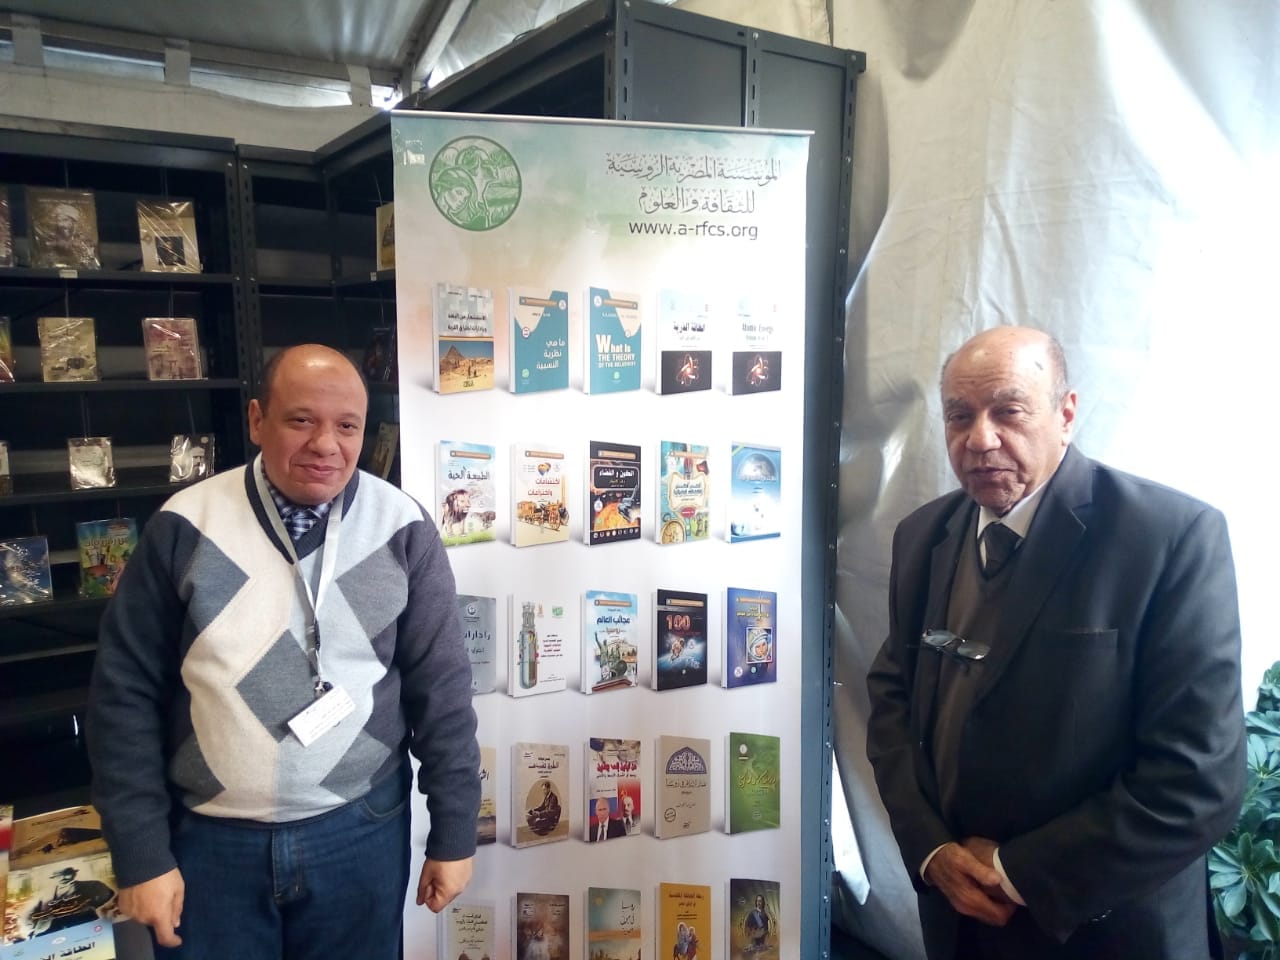 اصدارات المؤسسة المصرية الروسية للثقافة والعلوم مكتبة الإسكندرية معرض الإسكندرية للكتاب يوم 25 مارس الجاري والذي يستمر حتى 7 أبريل ٢٠١٩